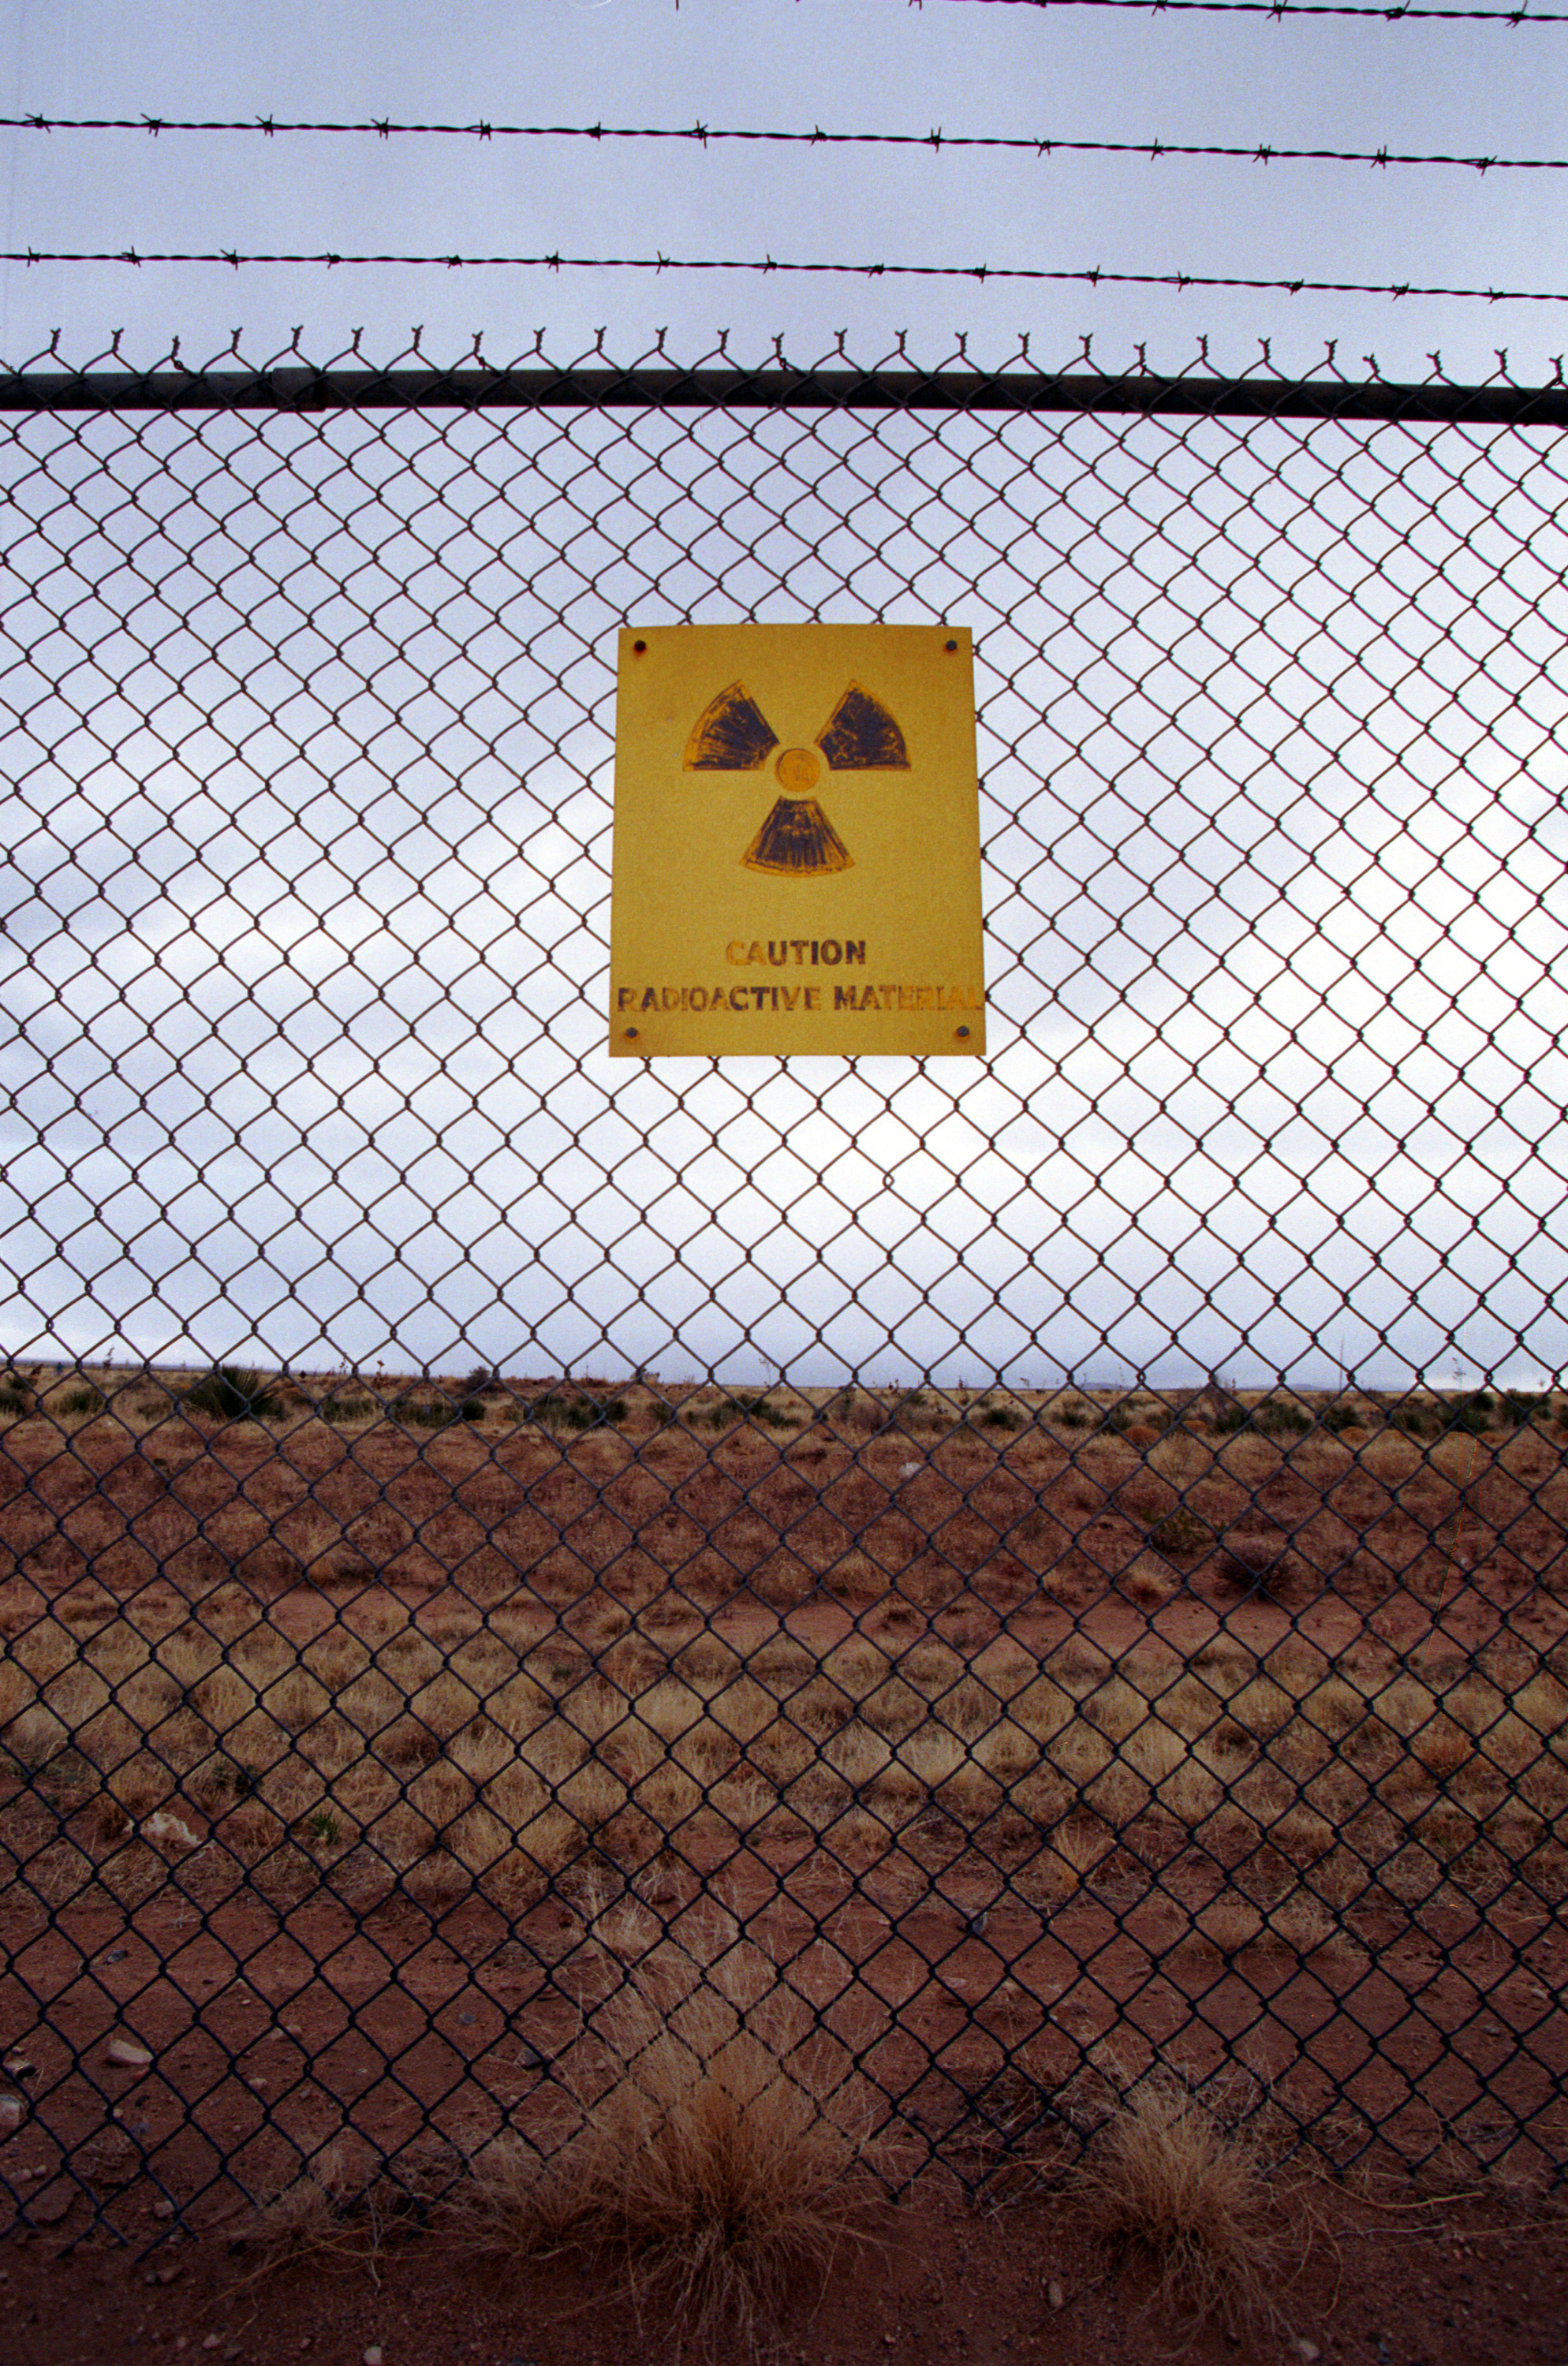 SERIE: 15 Irrtümer über Atomkraft – Teil 3